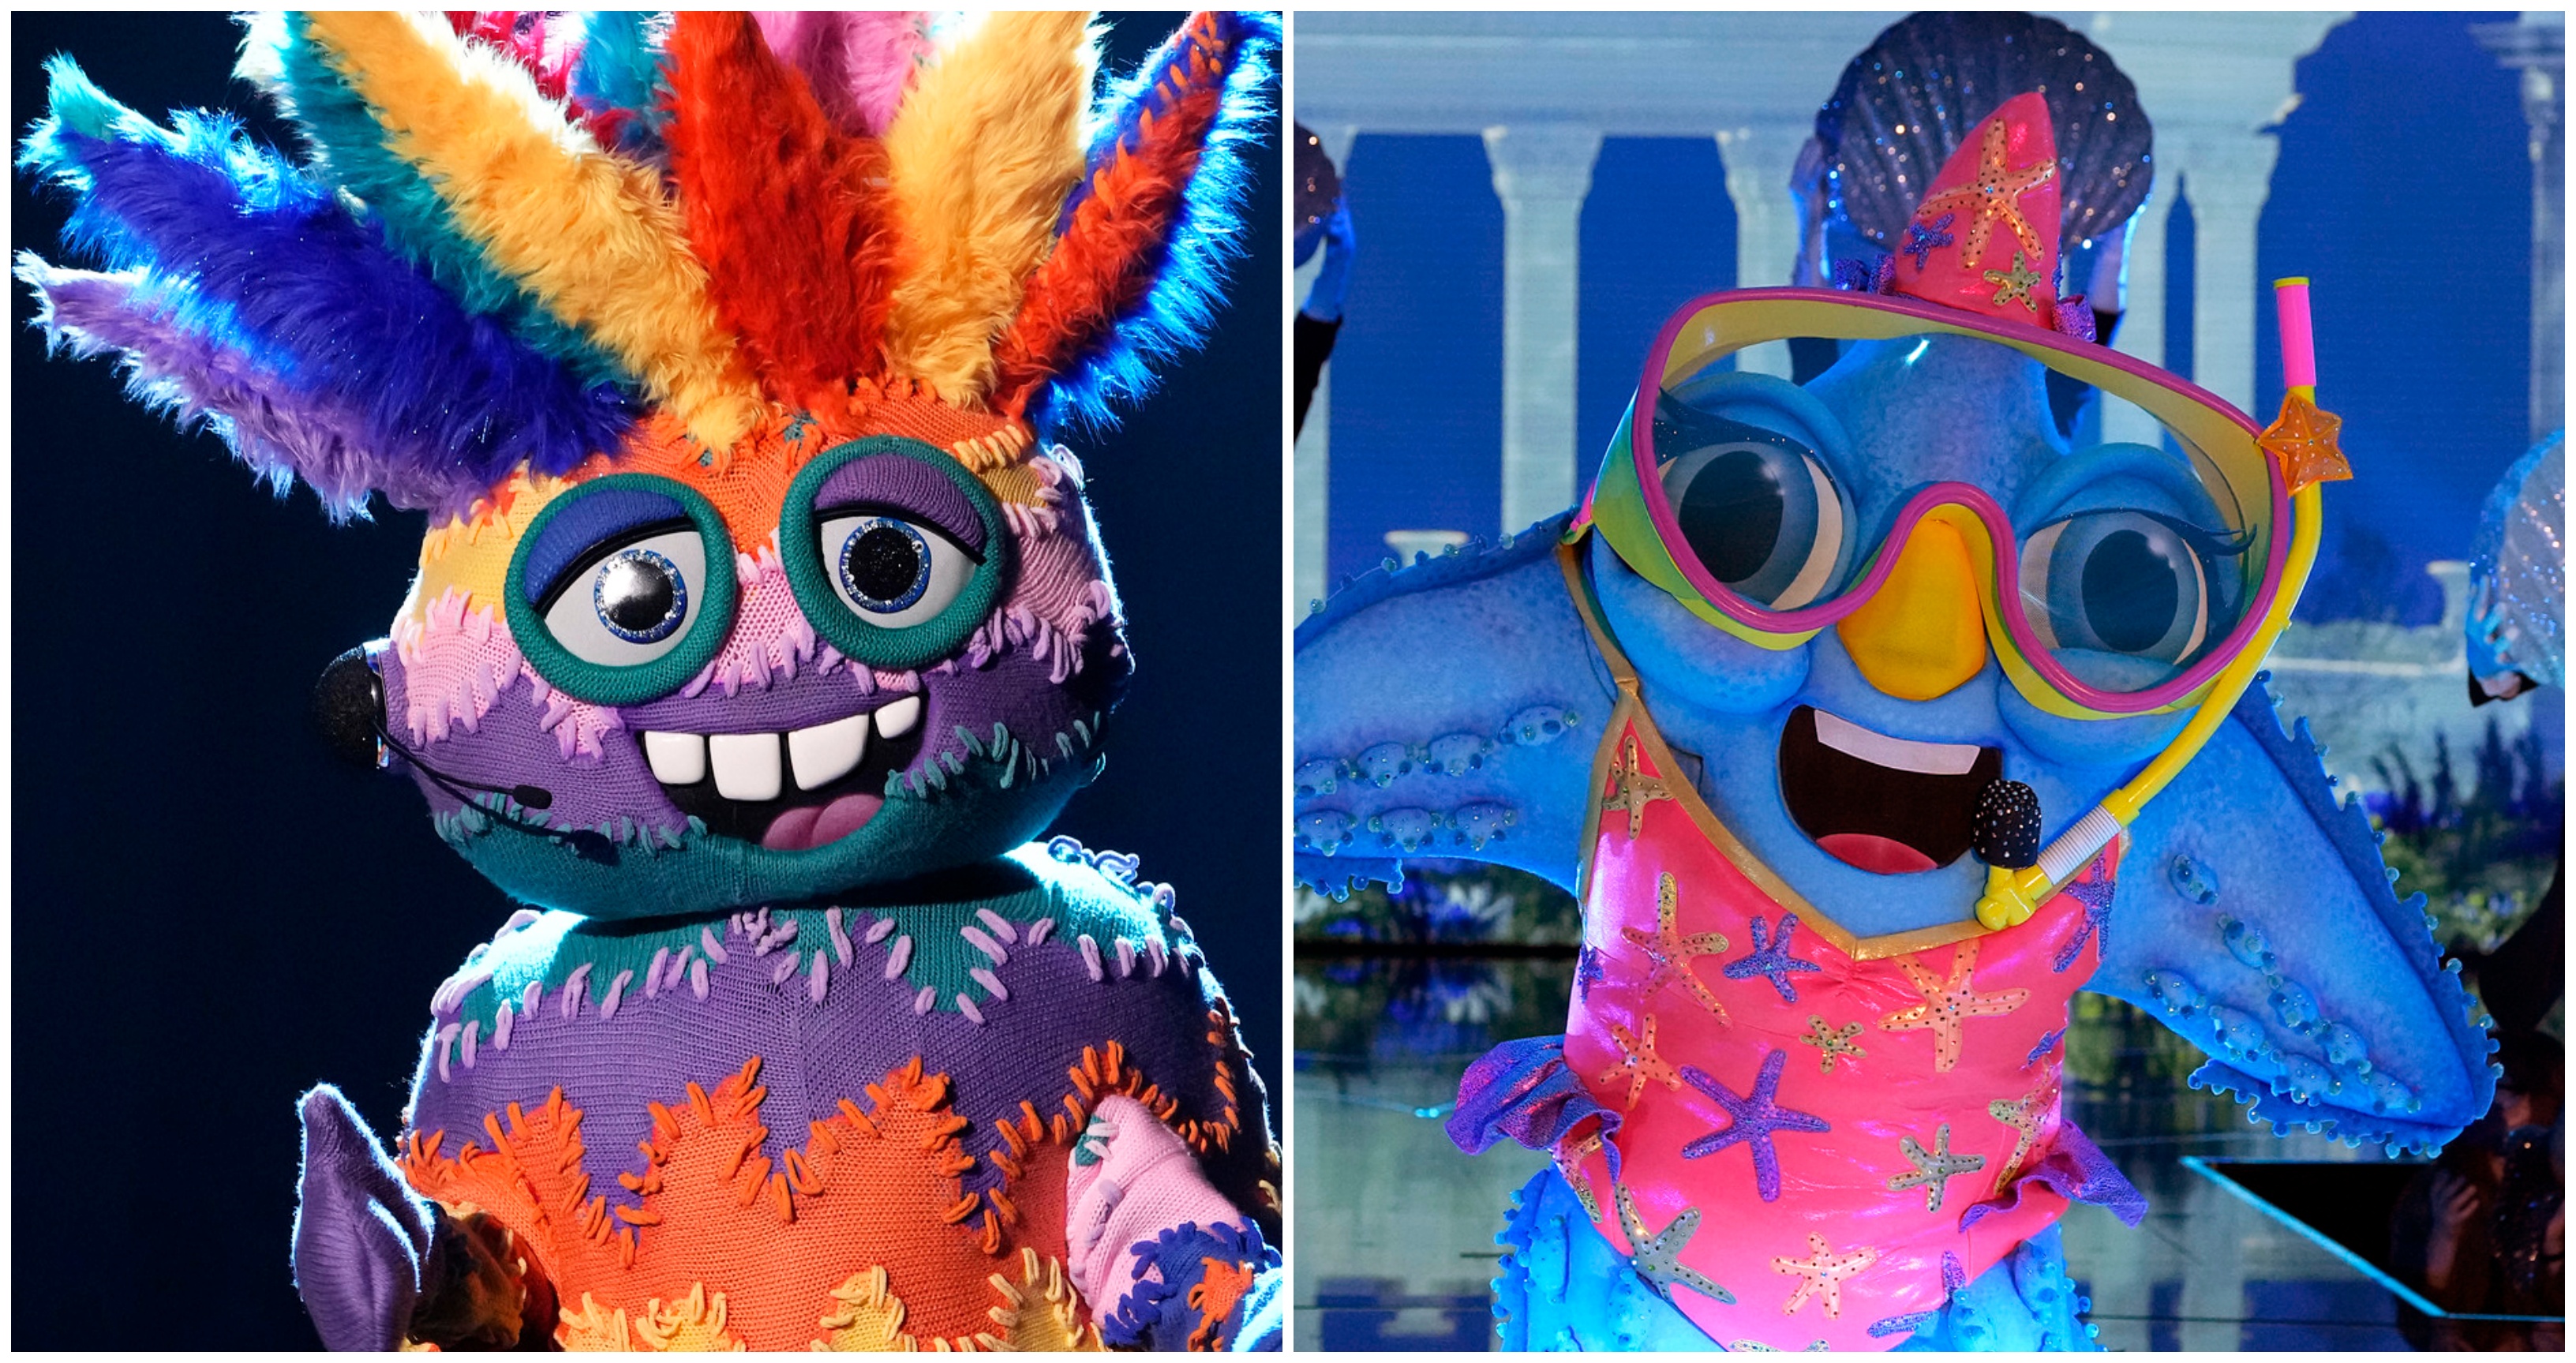 

	
		'El cantante enmascarado' revela las identidades de Ugly Sweater y Starfish: estos son los famosos bajo los disfraces
	
	